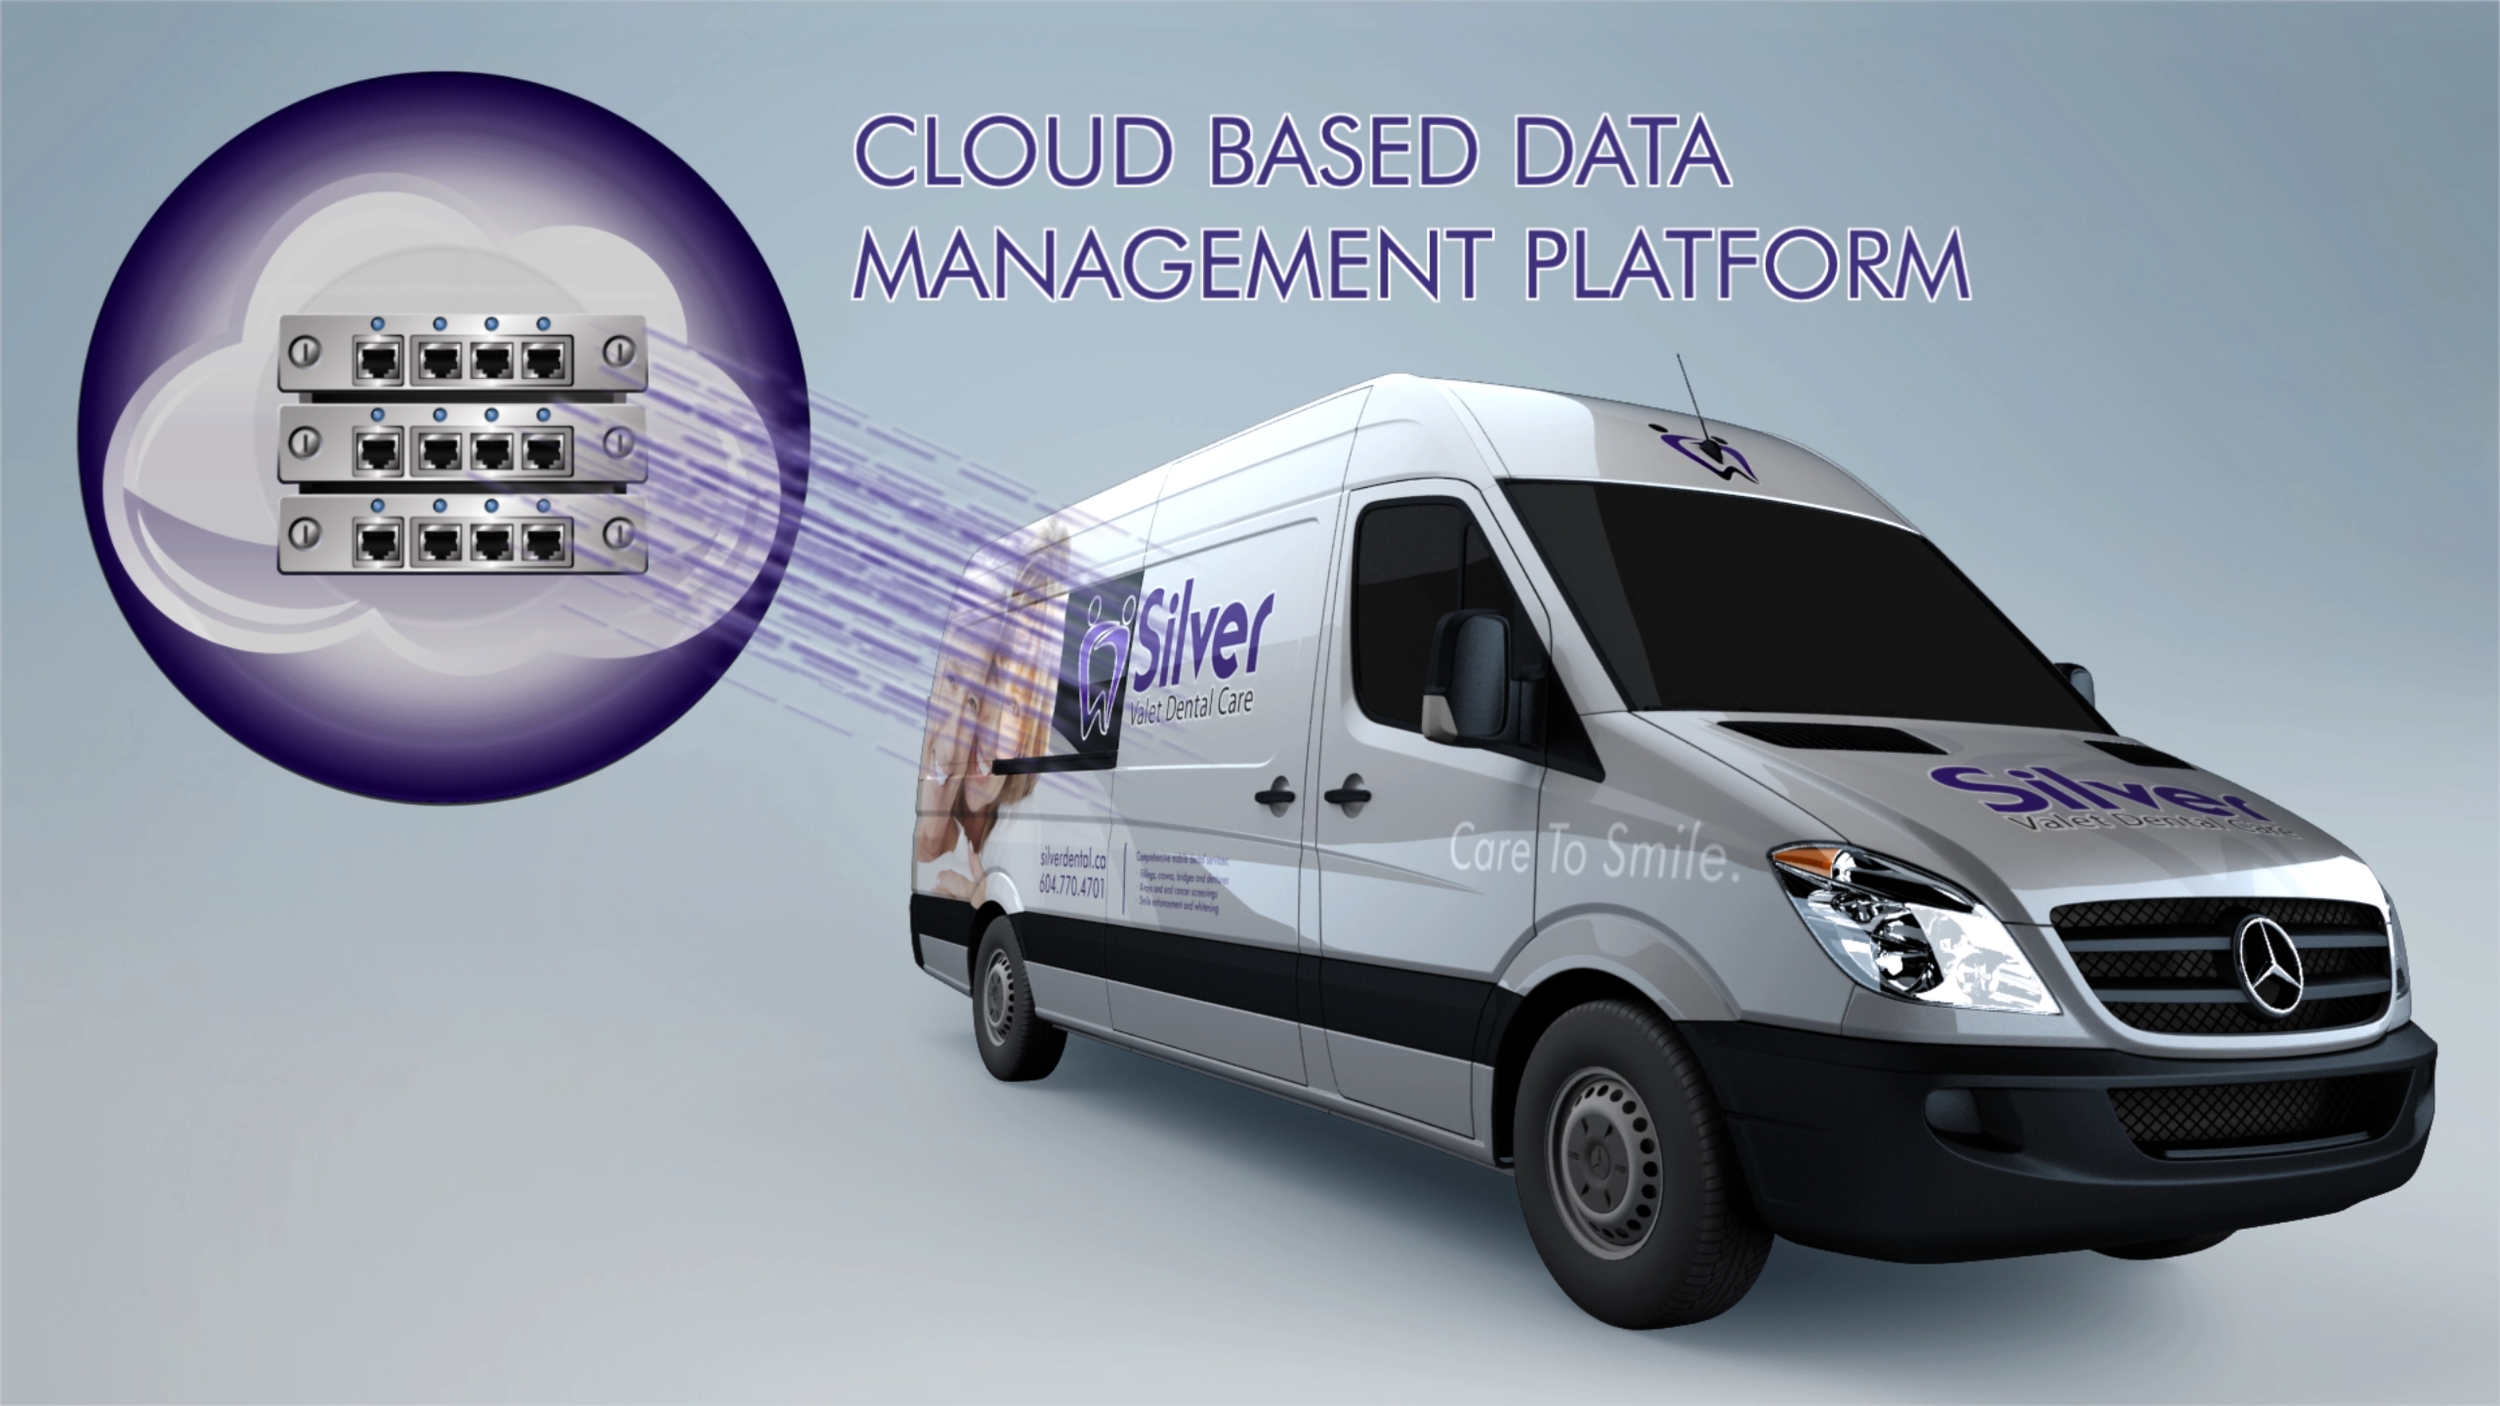 Cloud based data management platform